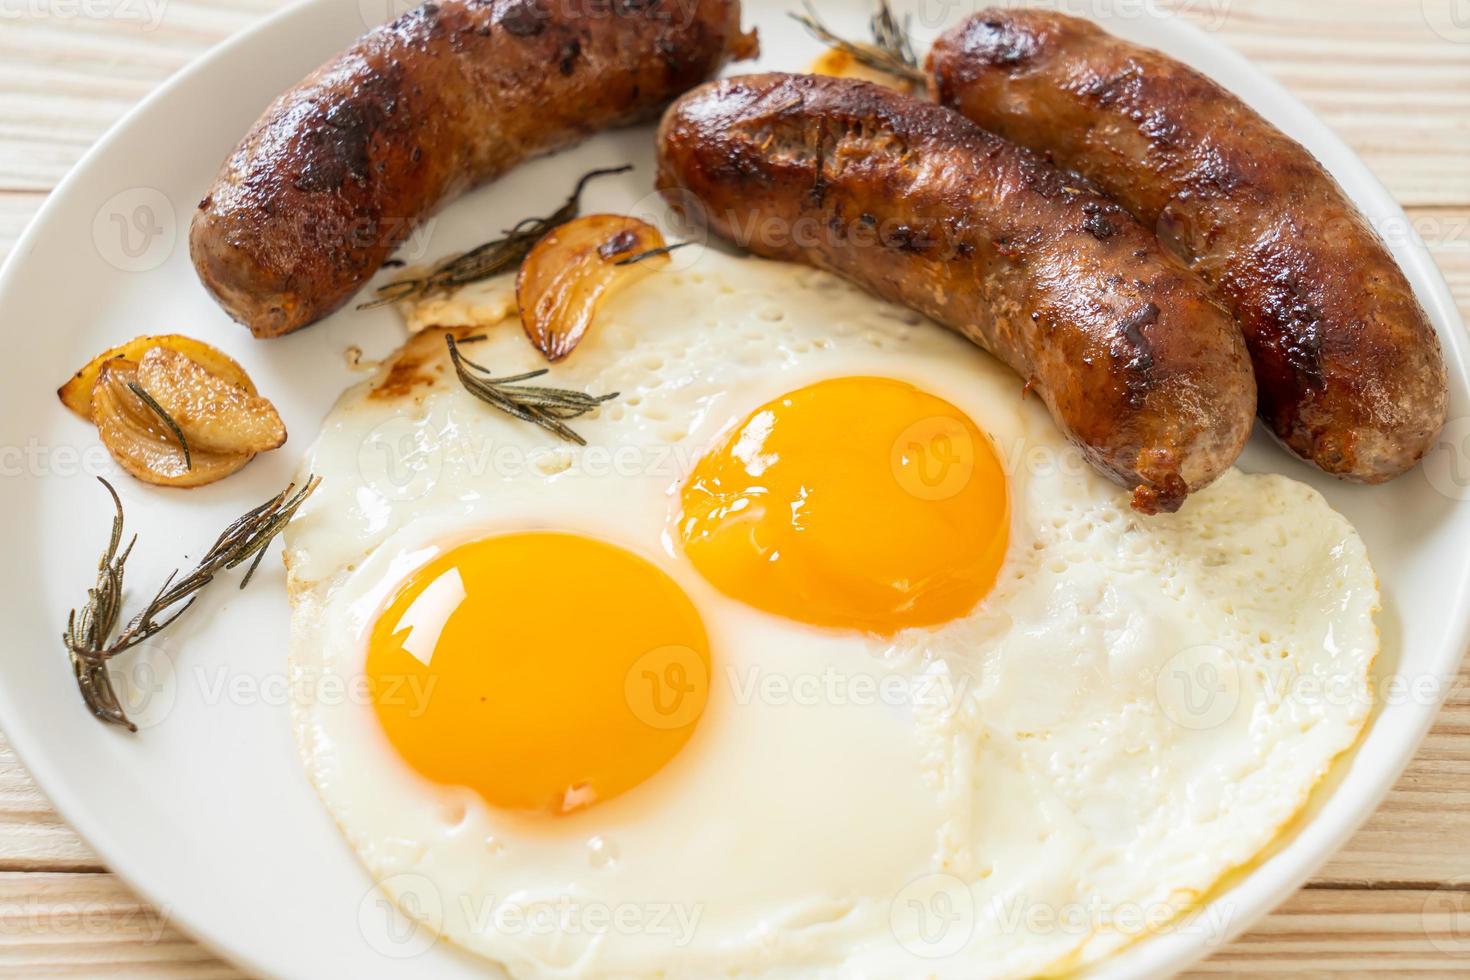 huisgemaakt dubbel gebakken ei met gebakken varkensworst - als ontbijt foto